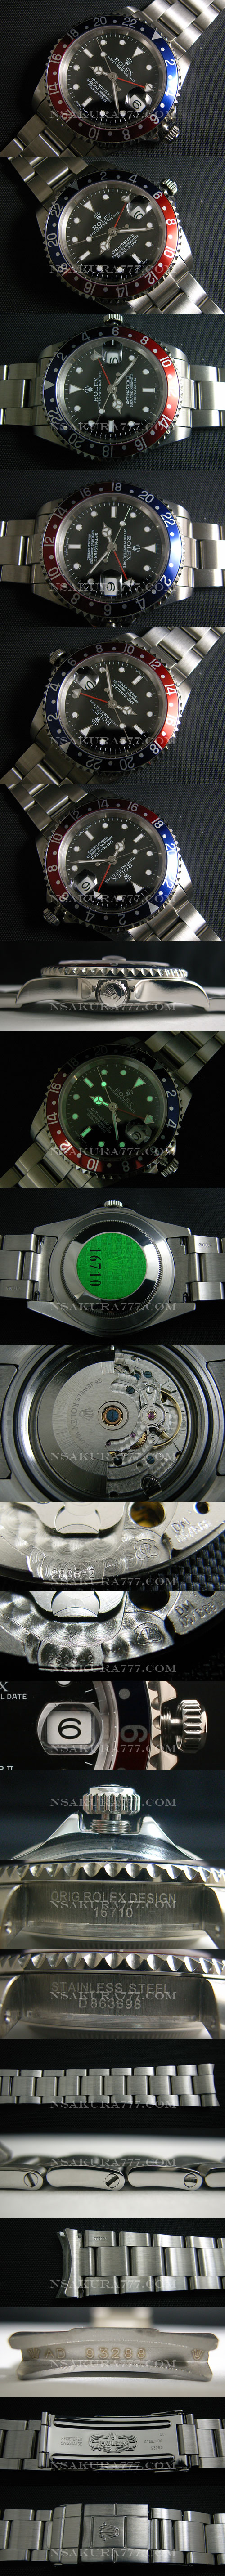 レプリカ時計ロレックス GMT短針単独稼動調整可 ETA 白2836-2搭載 - ウインドウを閉じる